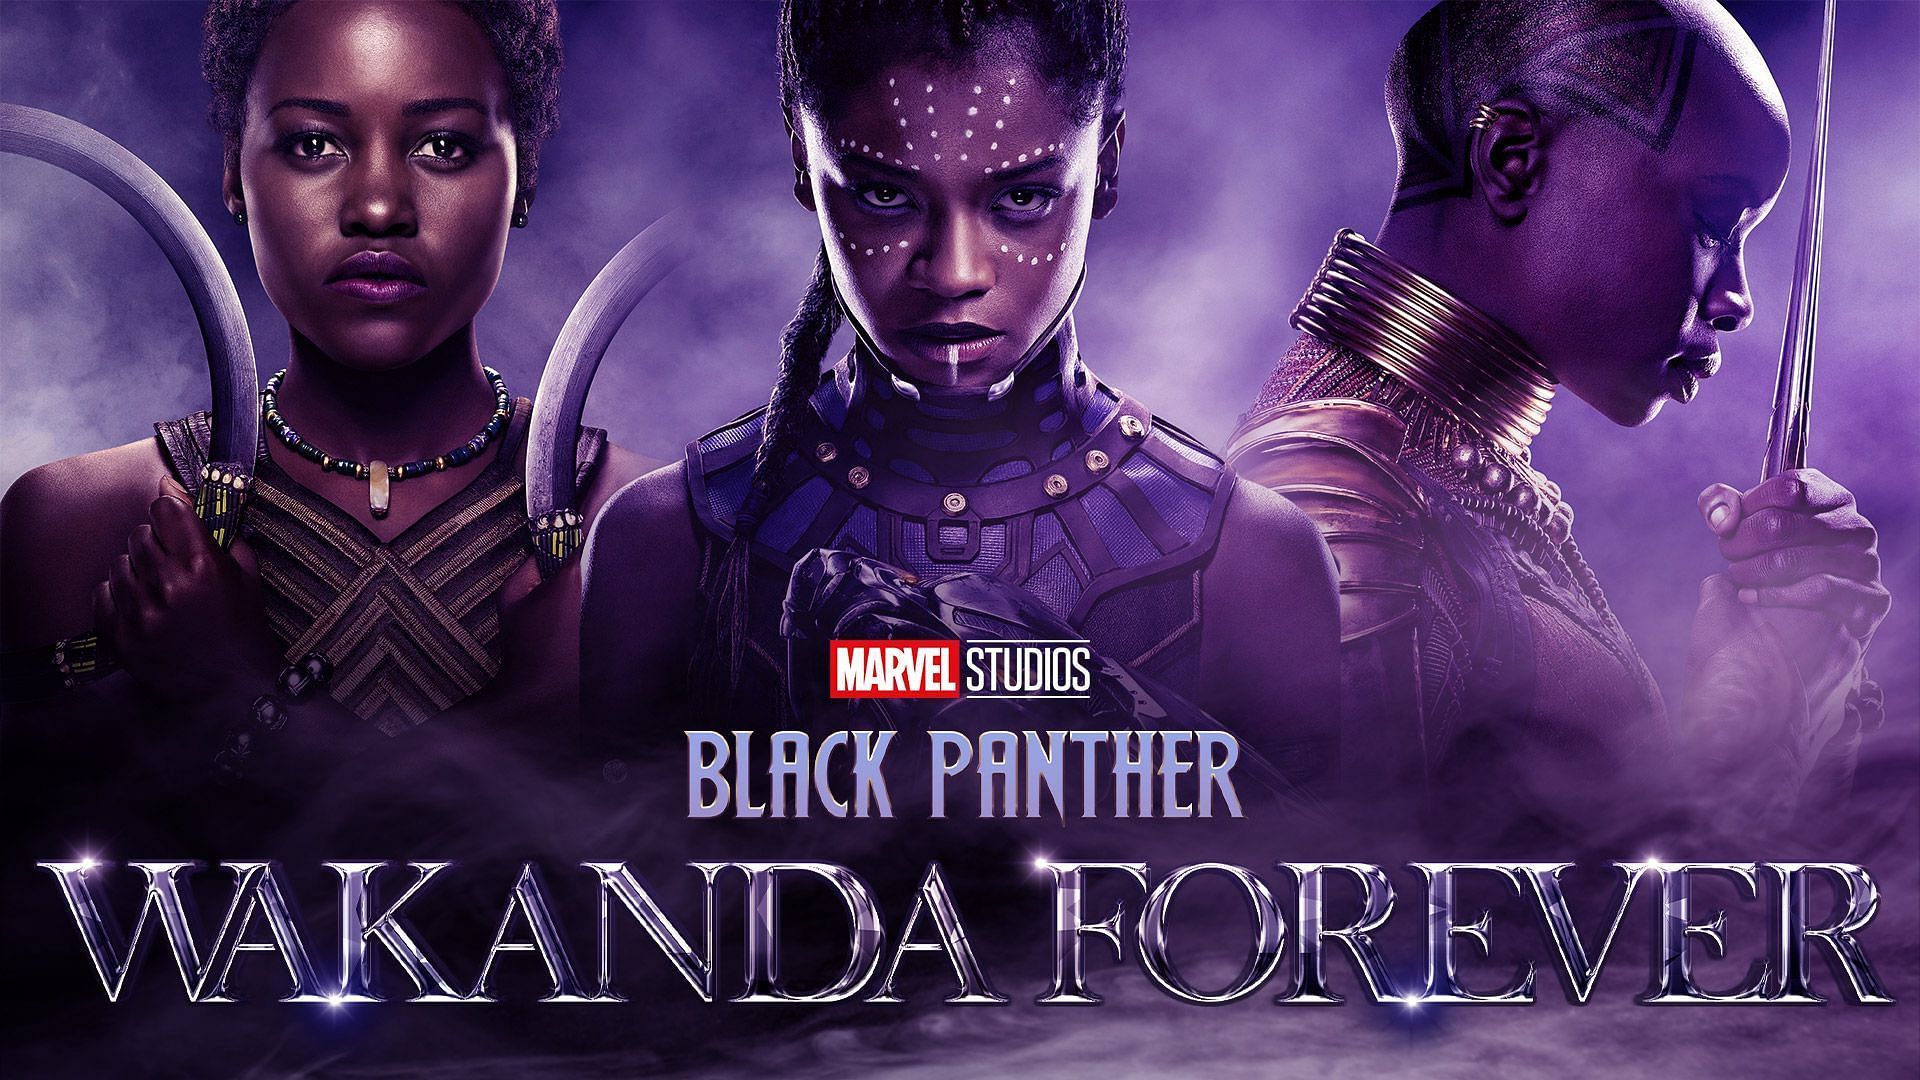 Black Panther Wakanda Forever (Image via Marvel)